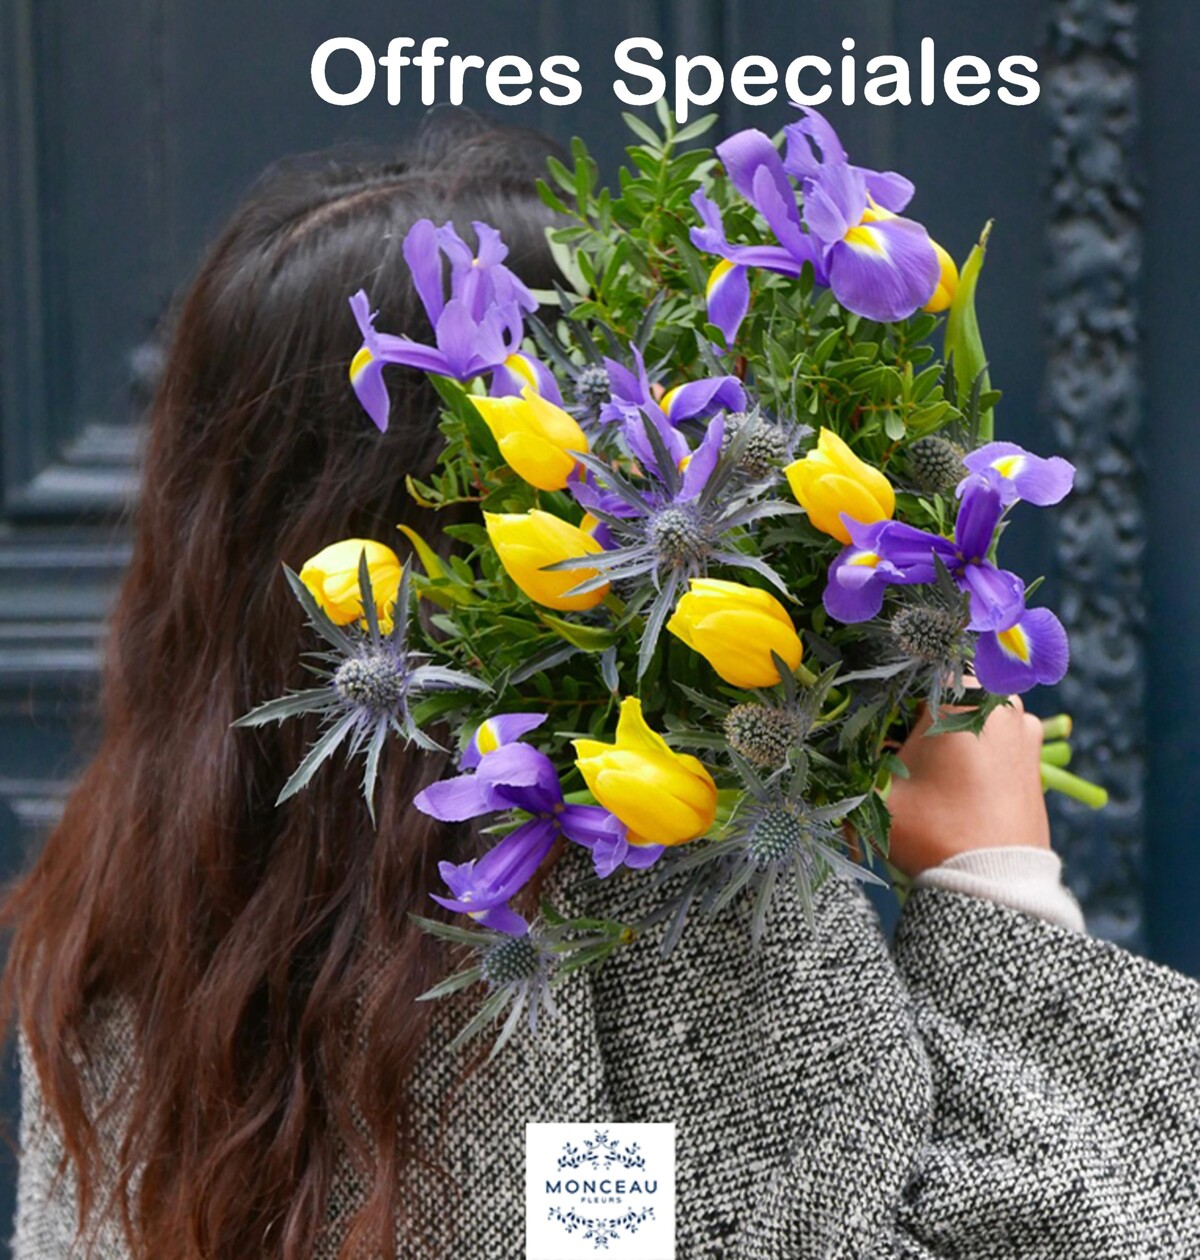 Catalogue Offres Speciales Monceau Fleurs, page 00001